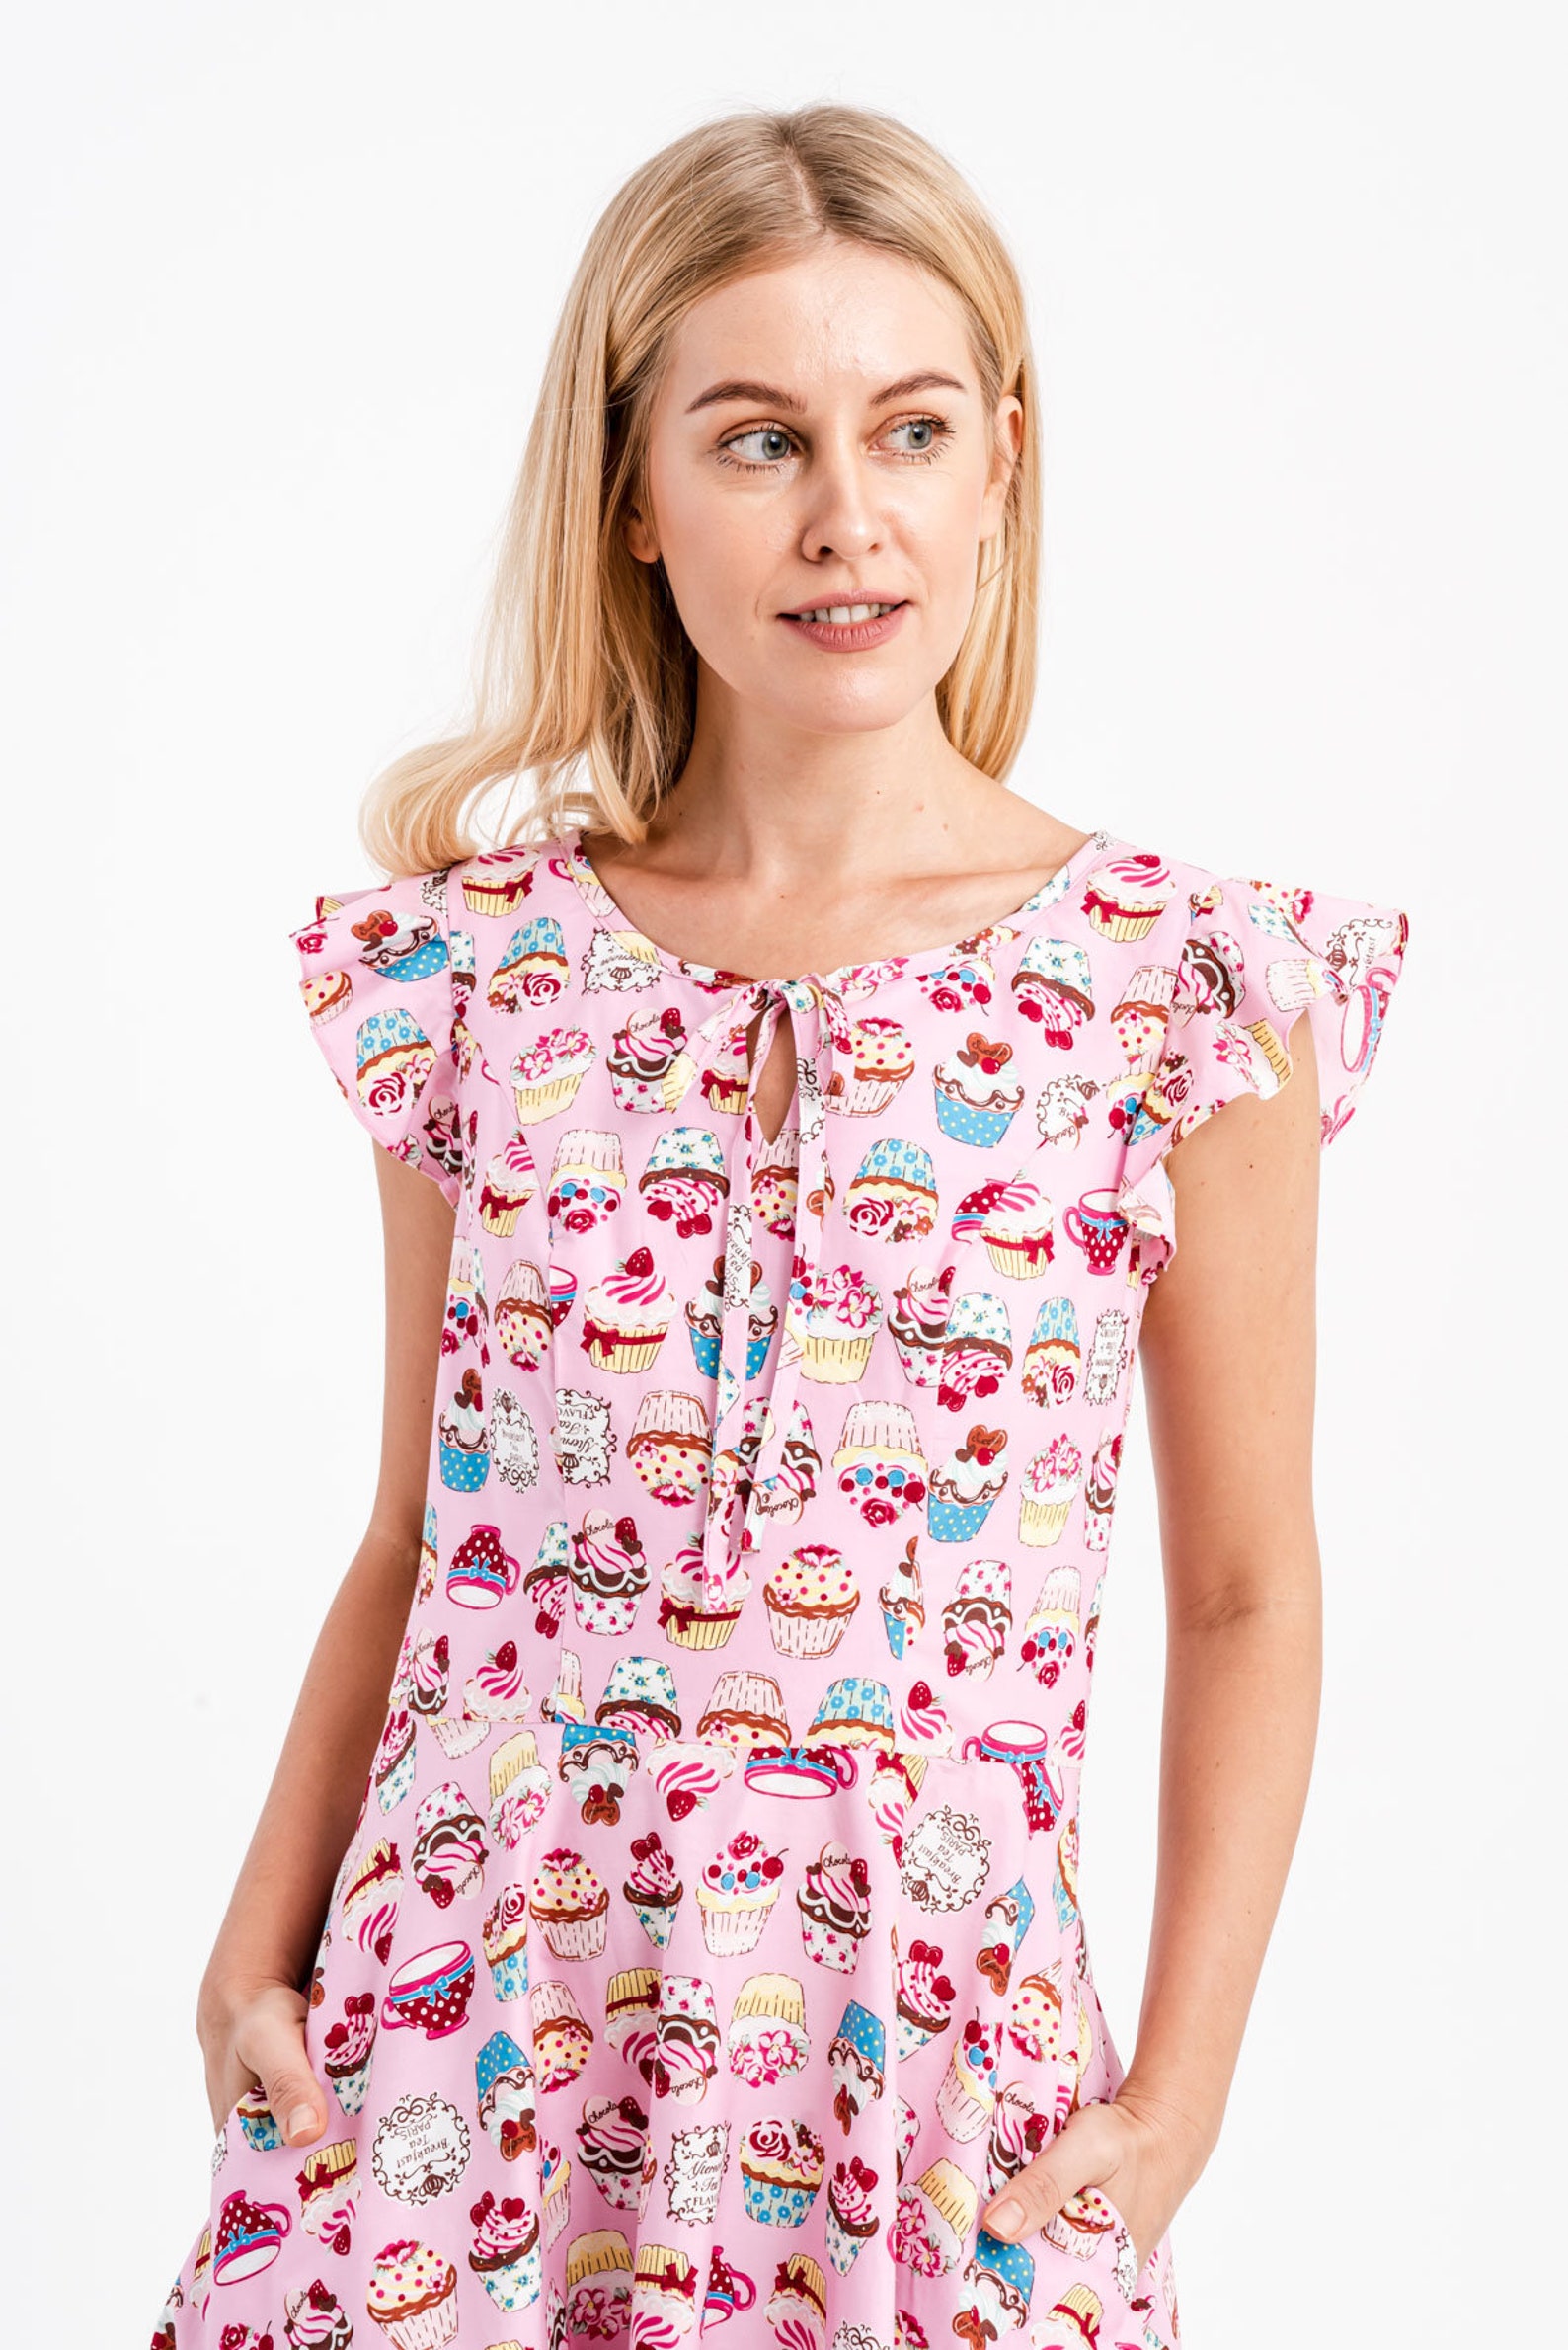 Pink Cupcake Dress Lolita Dress Kawaii Dress Summer Dress - Etsy